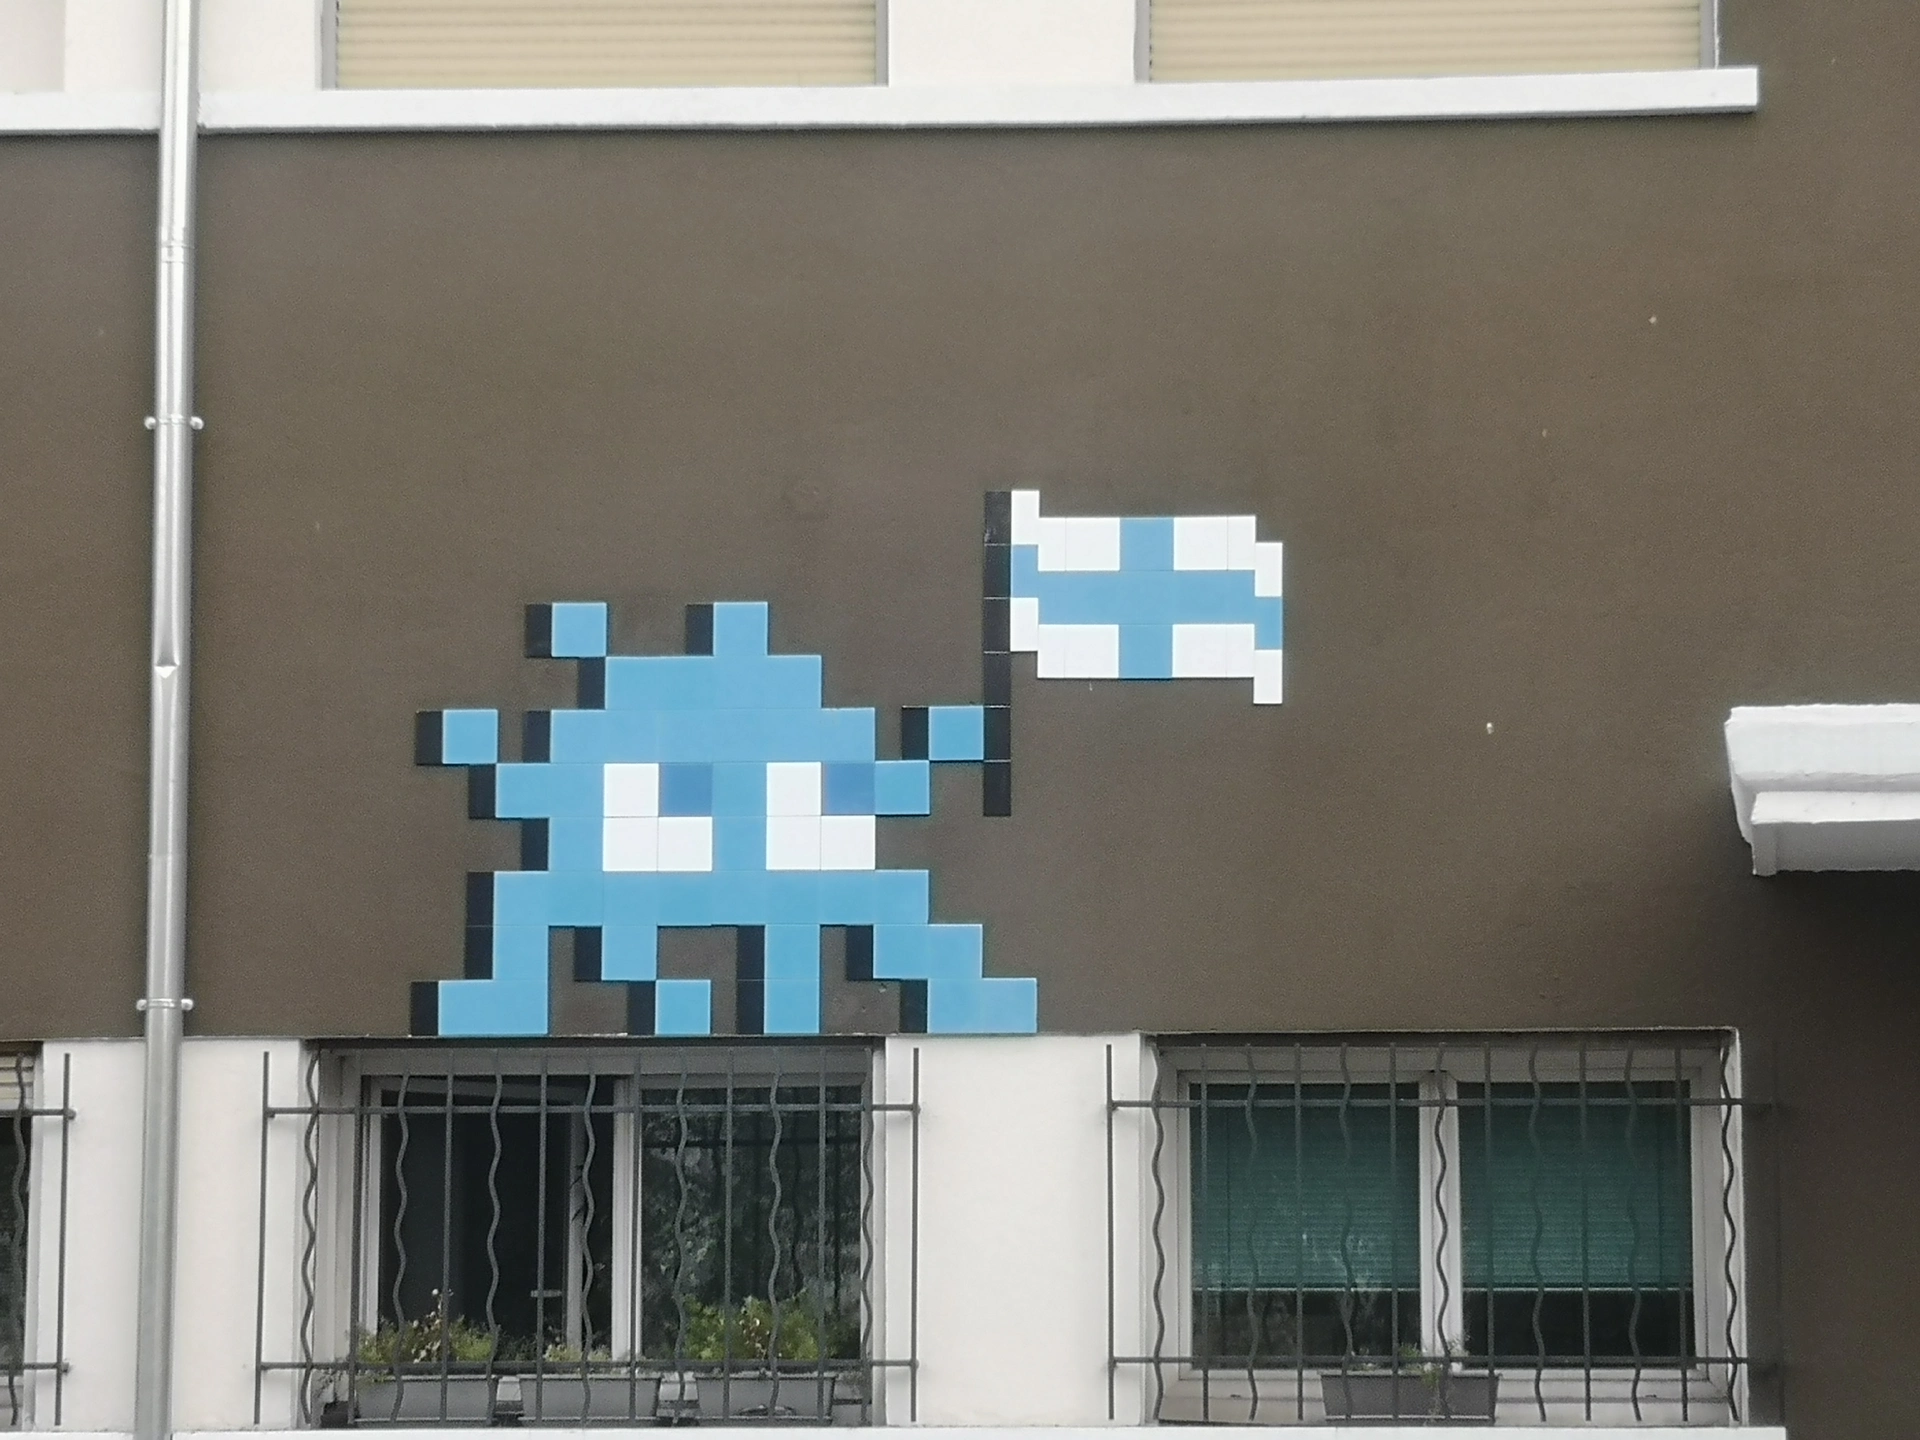 Oeuvre de Street Art réalisée par Invader à Marseille